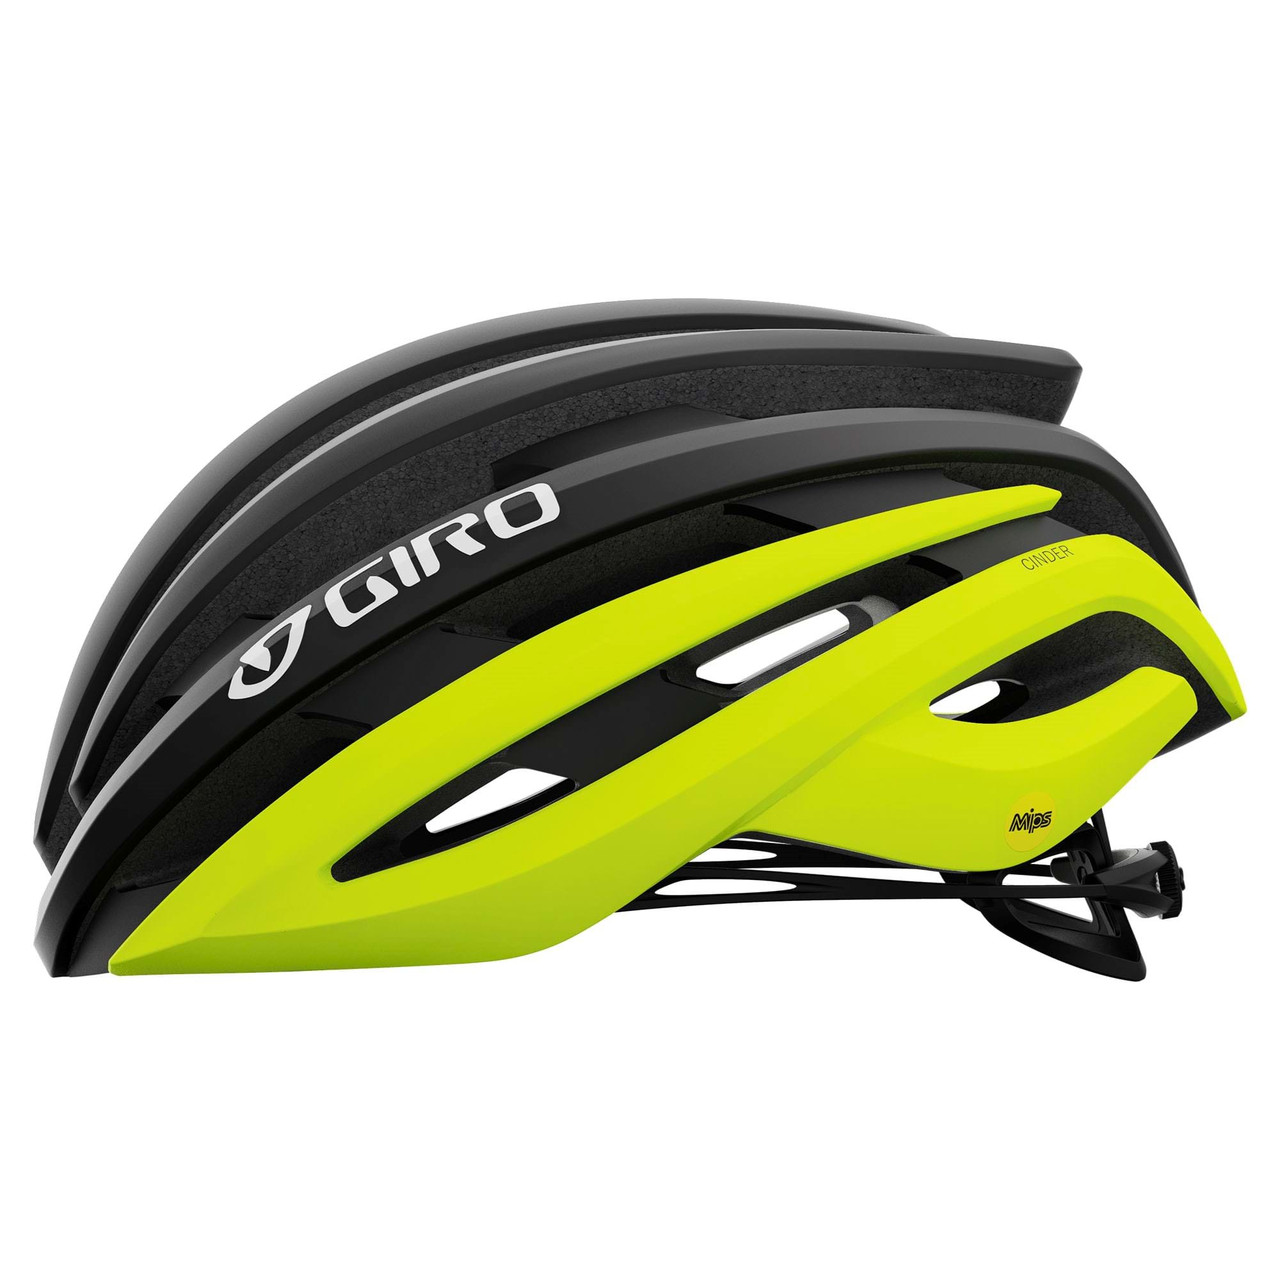 Giro Cinder MIPS Road Helmet in Matte Black Fade/Yellow